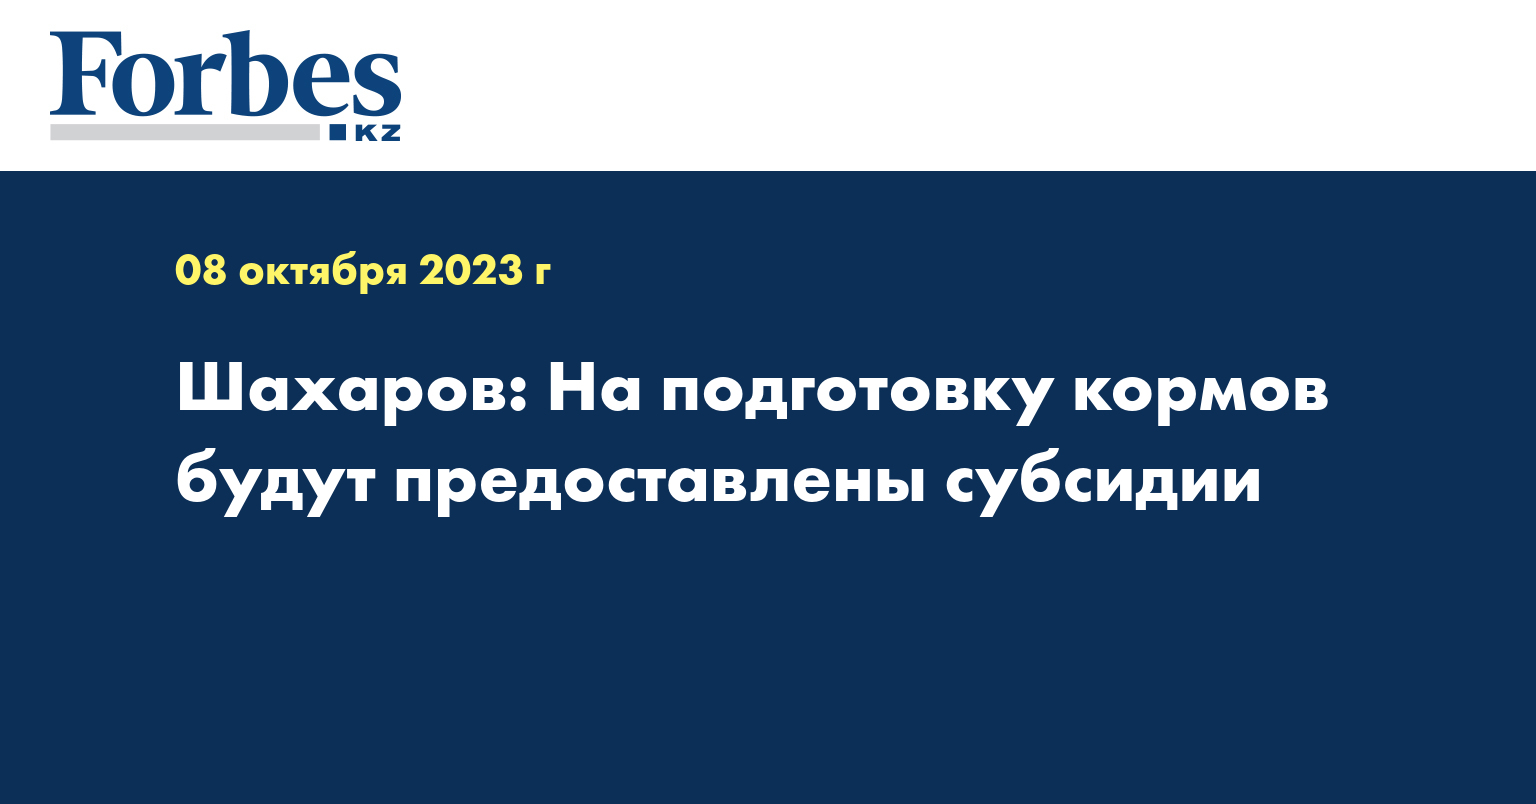 Шахаров: На подготовку кормов будут предоставлены субсидии